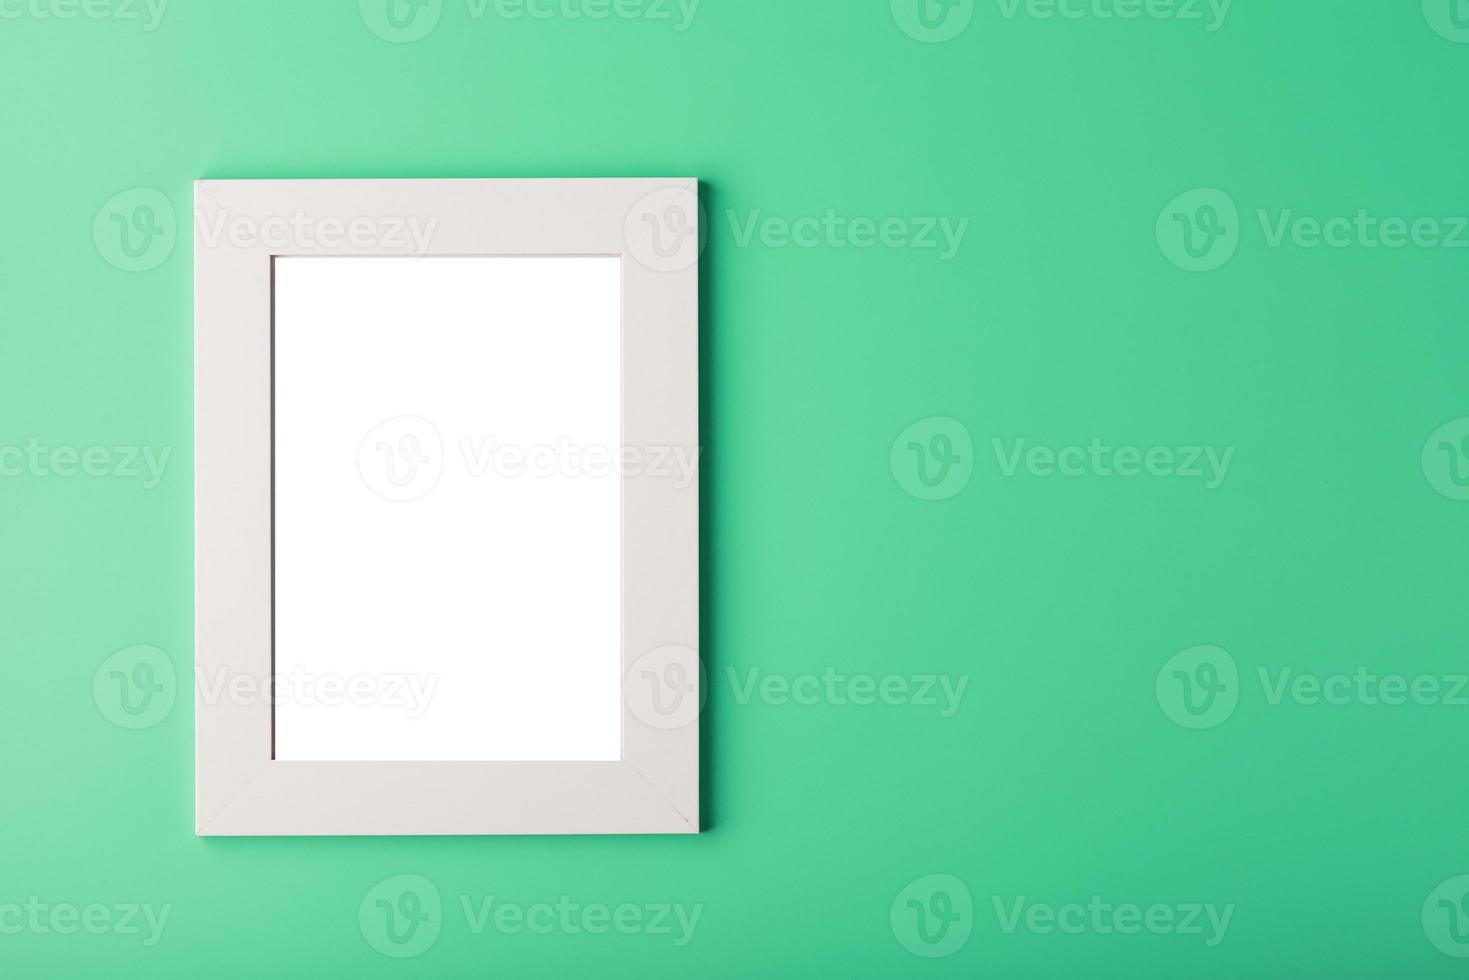 marco de fotos blanco con un espacio vacío sobre un fondo verde.